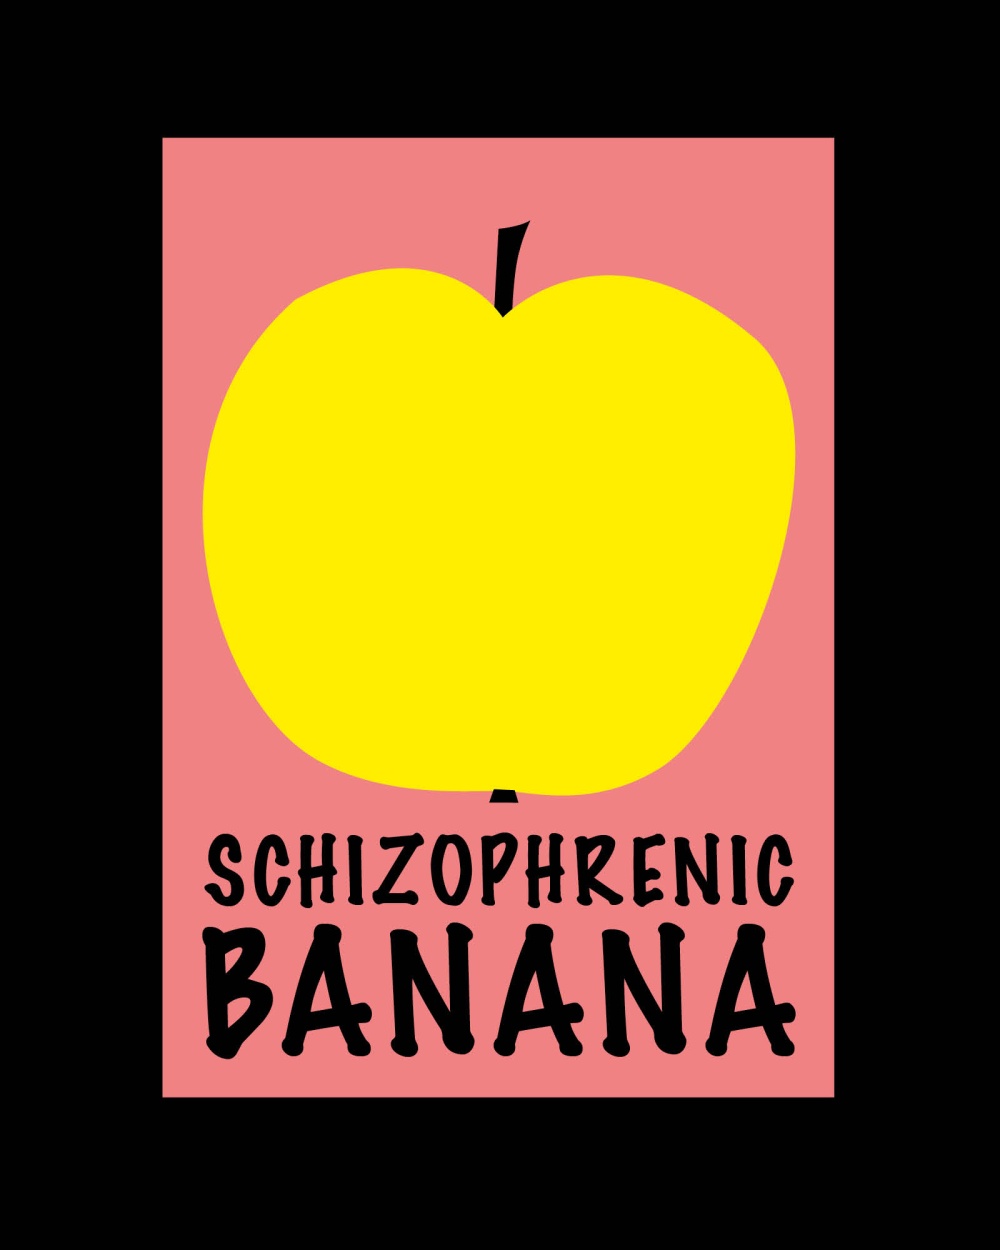 Schizophrenic banana